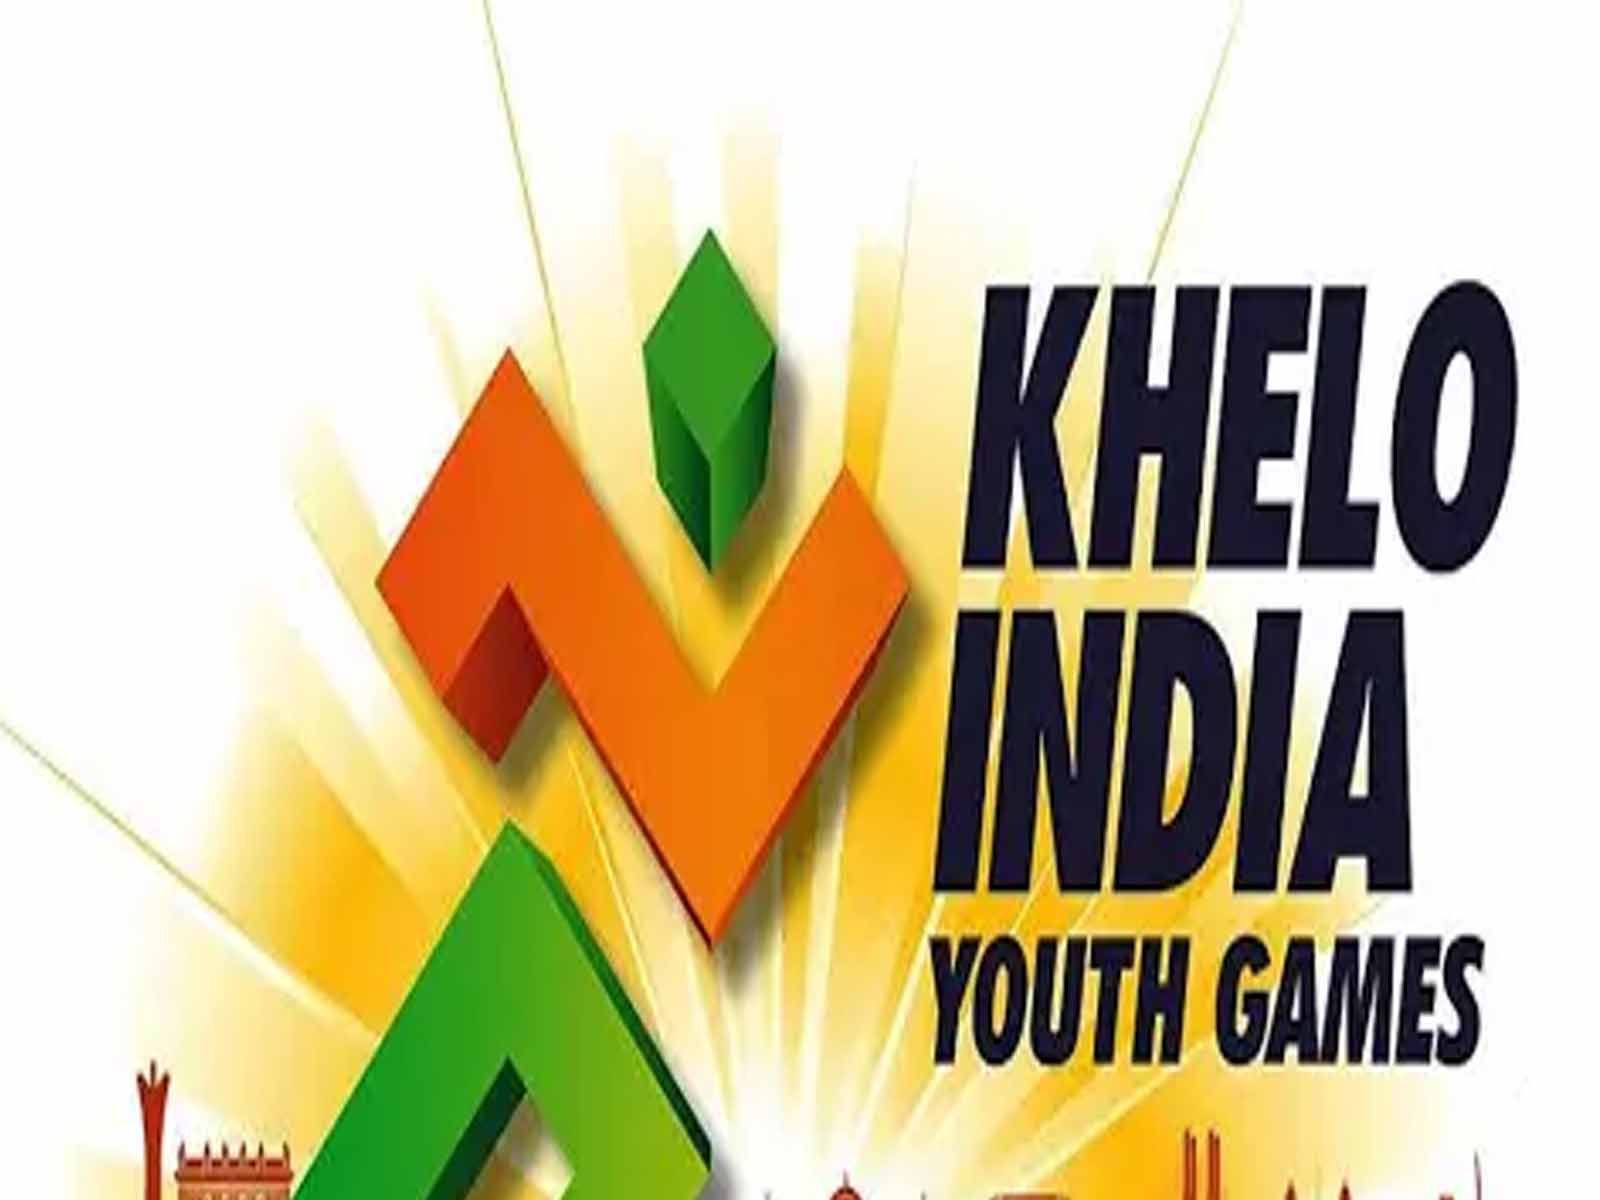 Khelo India Youth Games: ਚੰਡੀਗੜ੍ਹ ਦੇ ਯਸ਼ਵੀਰ ਮਲਿਕ ਨੇ ਗ੍ਰੀਕੋ-ਰੋਮਨ ਗੋਲਡ ਮੈਡਲ ਕੀਤਾ ਆਪਣੇ ਨਾਮ (ਸੰਕੇਤਕ ਫੋਟੋ)

